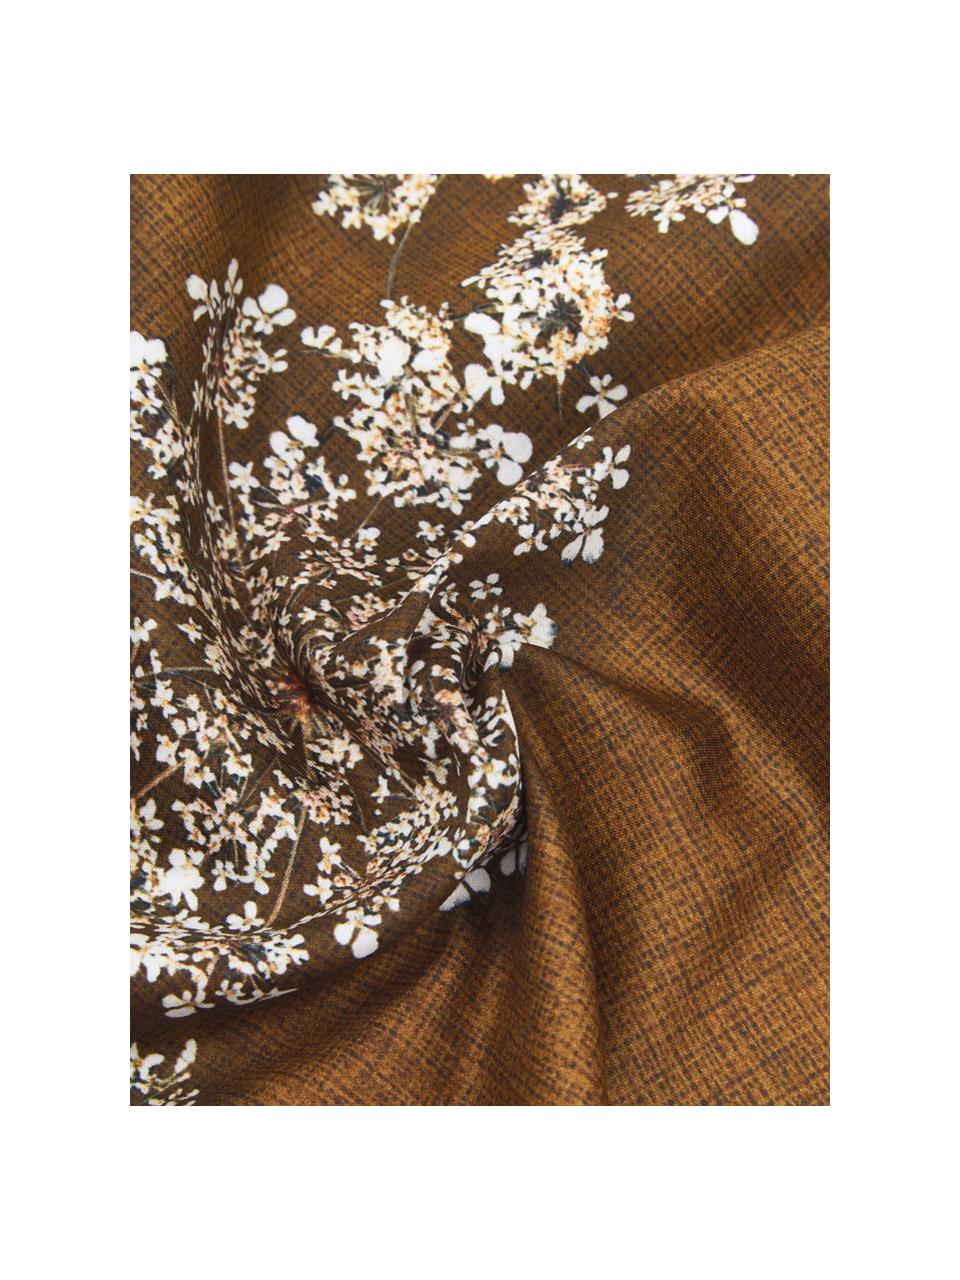 Baumwollsatin-Bettwäsche Lauren mit Blüten-Muster, Webart: Satin Baumwollsatin wird , Zimtbraun, 200 x 200 cm + 2 Kissen 80 x 80 cm